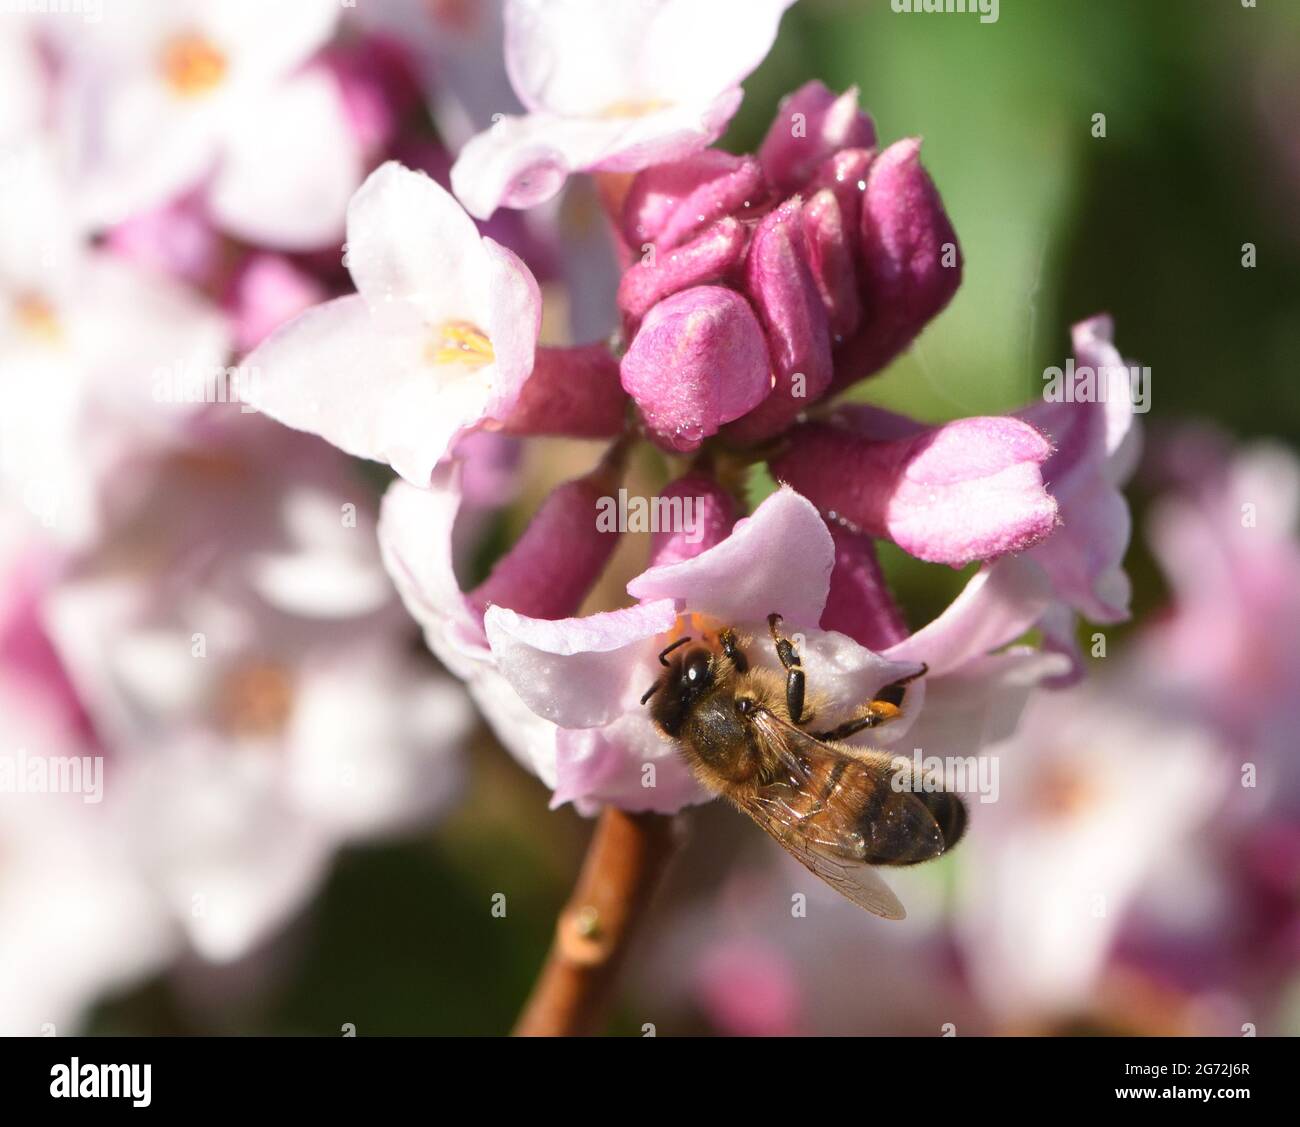 Les abeilles (APIs mellifera) sont tirées de leur nid pour ajouter à leur approvisionnement hivernal de nectar par une journée ensoleillée au début de février Banque D'Images